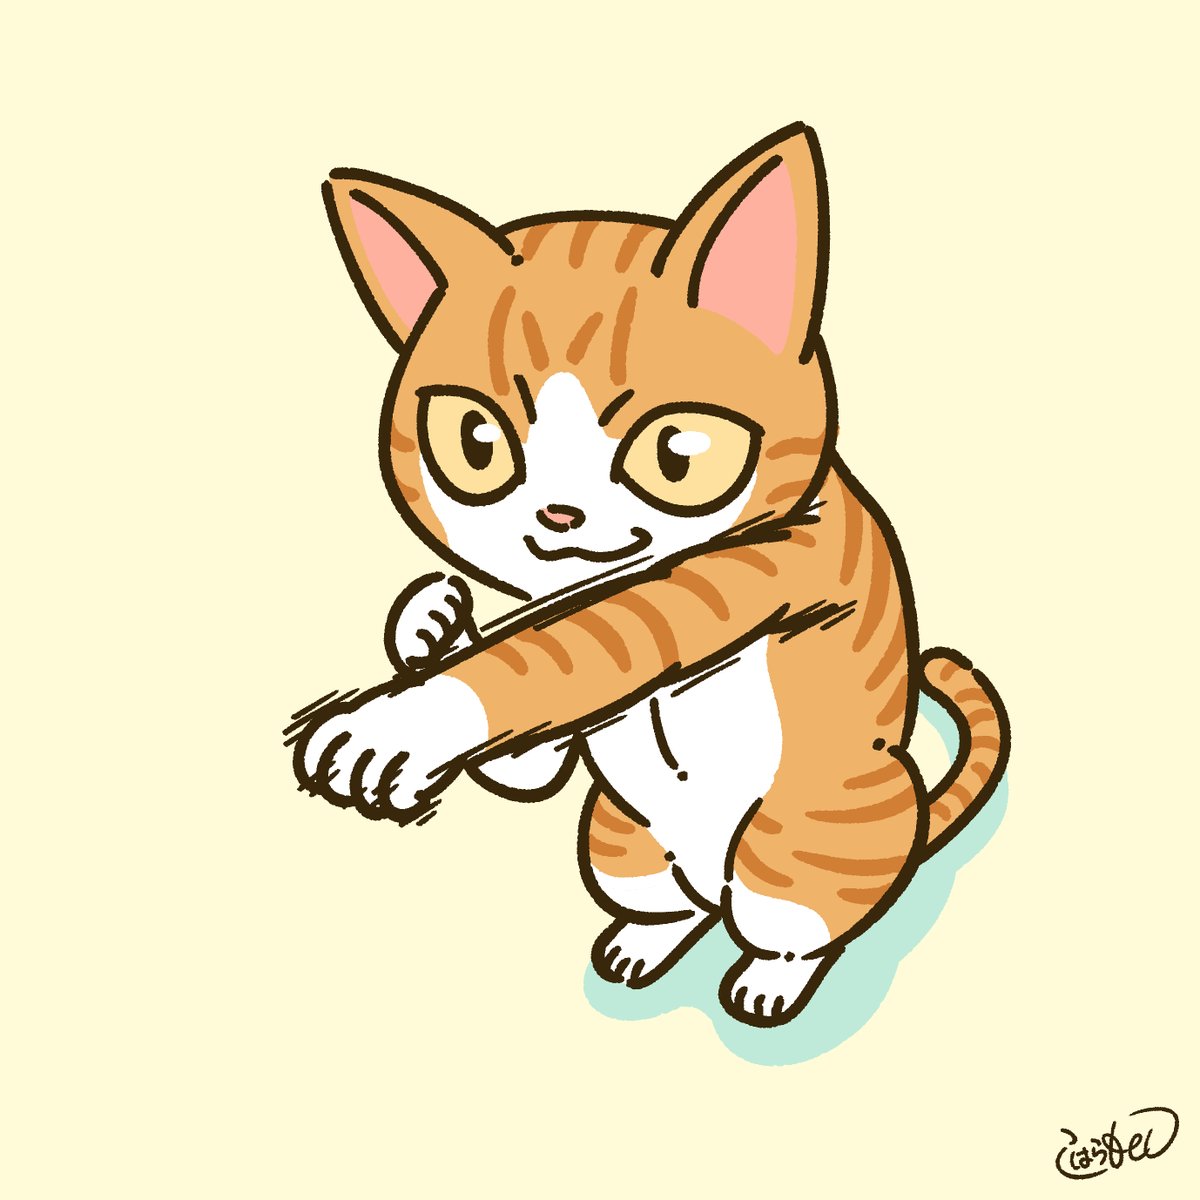 コハラモトシ 限定イラストプレゼント中 على تويتر 猫パンチが面白可愛くて つい描いちゃいました T Co Jgu0ac6auu